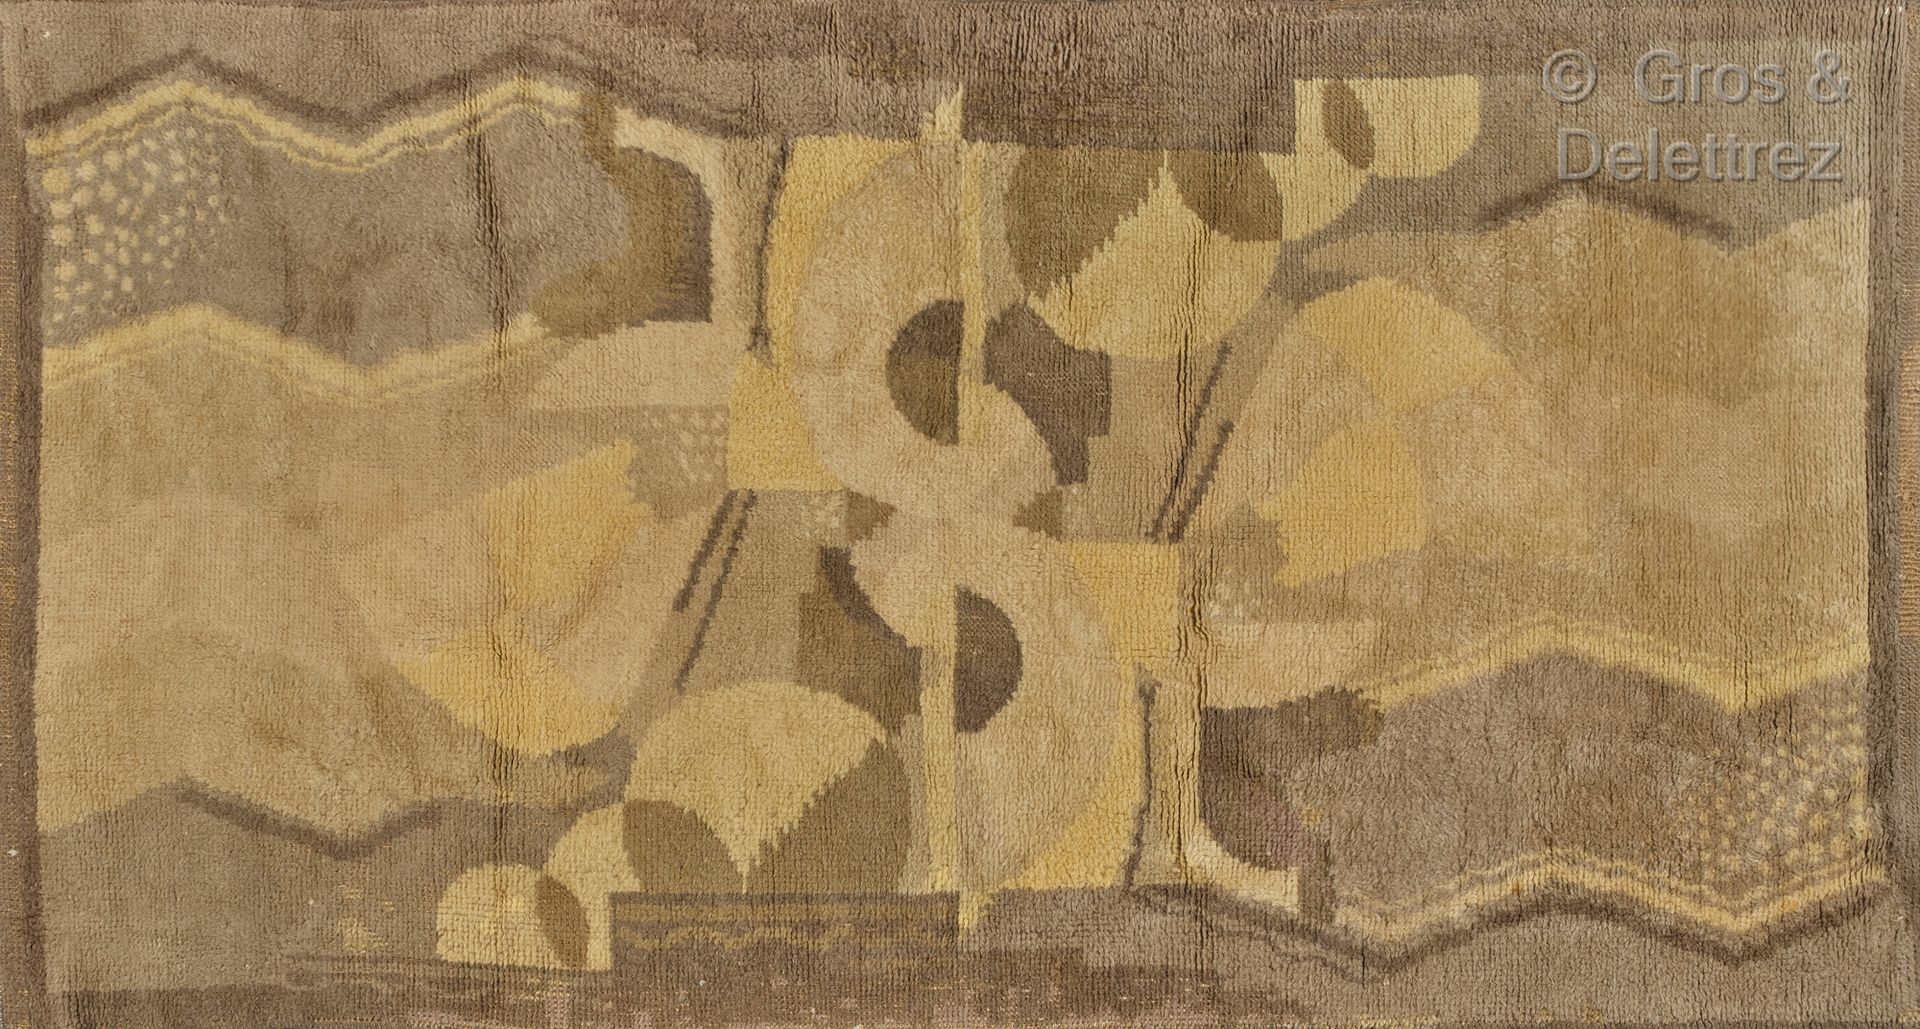 TRAVAIL DES ANNÉES 30 Tapis en laine à décor géométrique.

235 x 125 cm